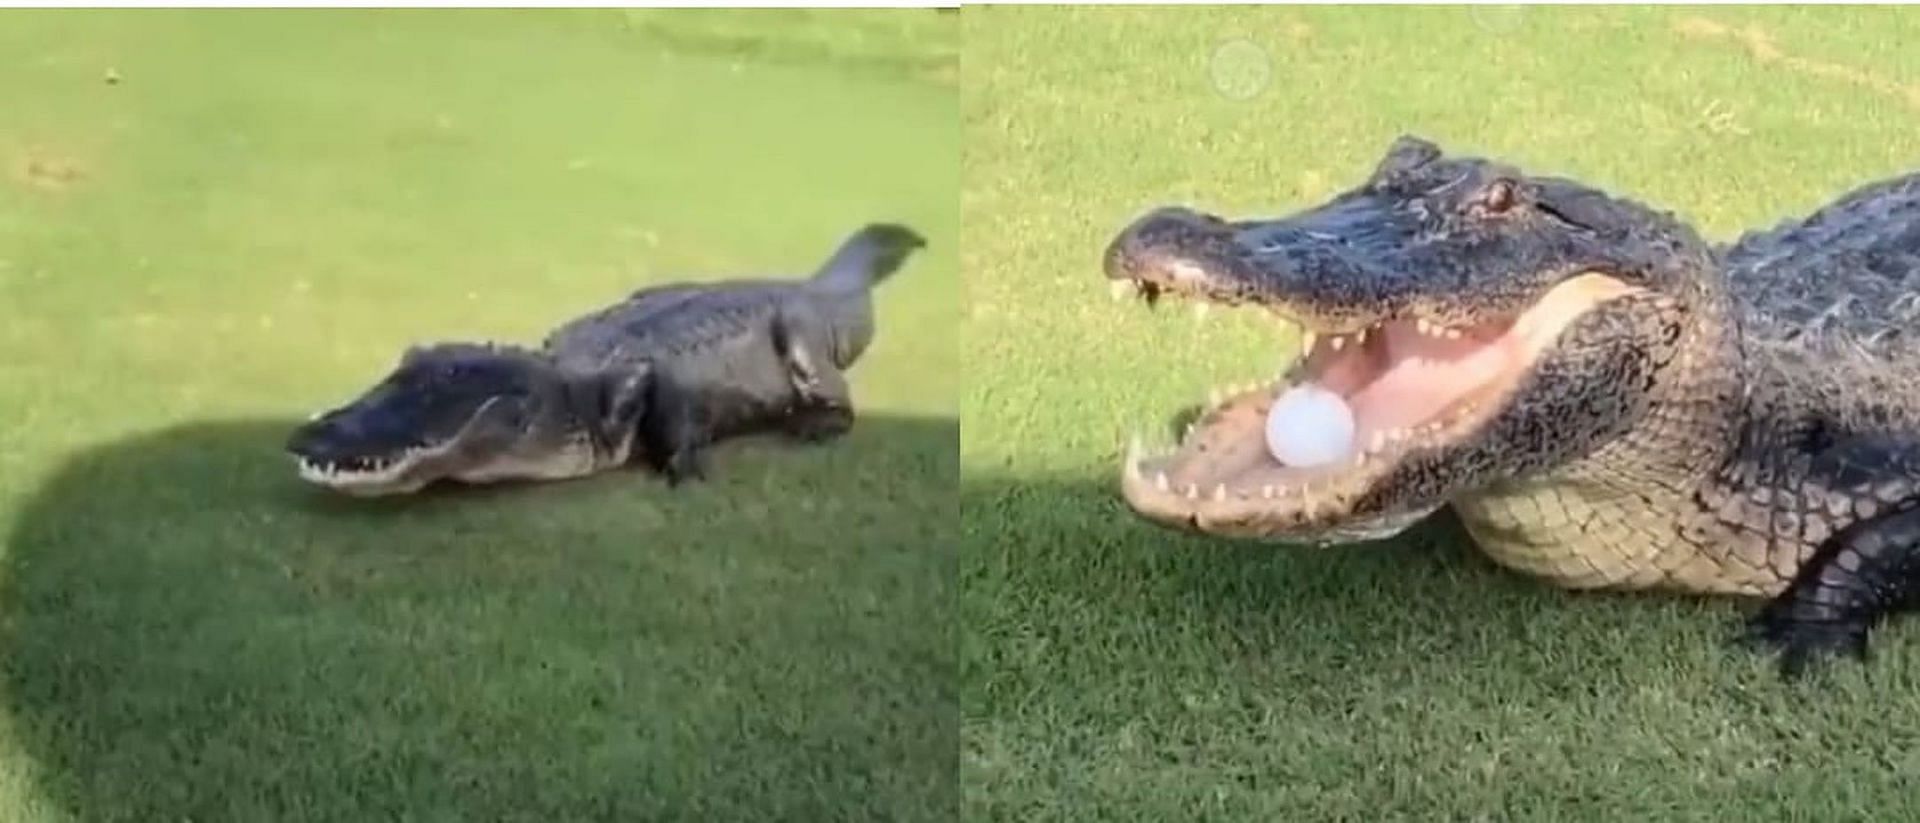 Large alligator stops golf 